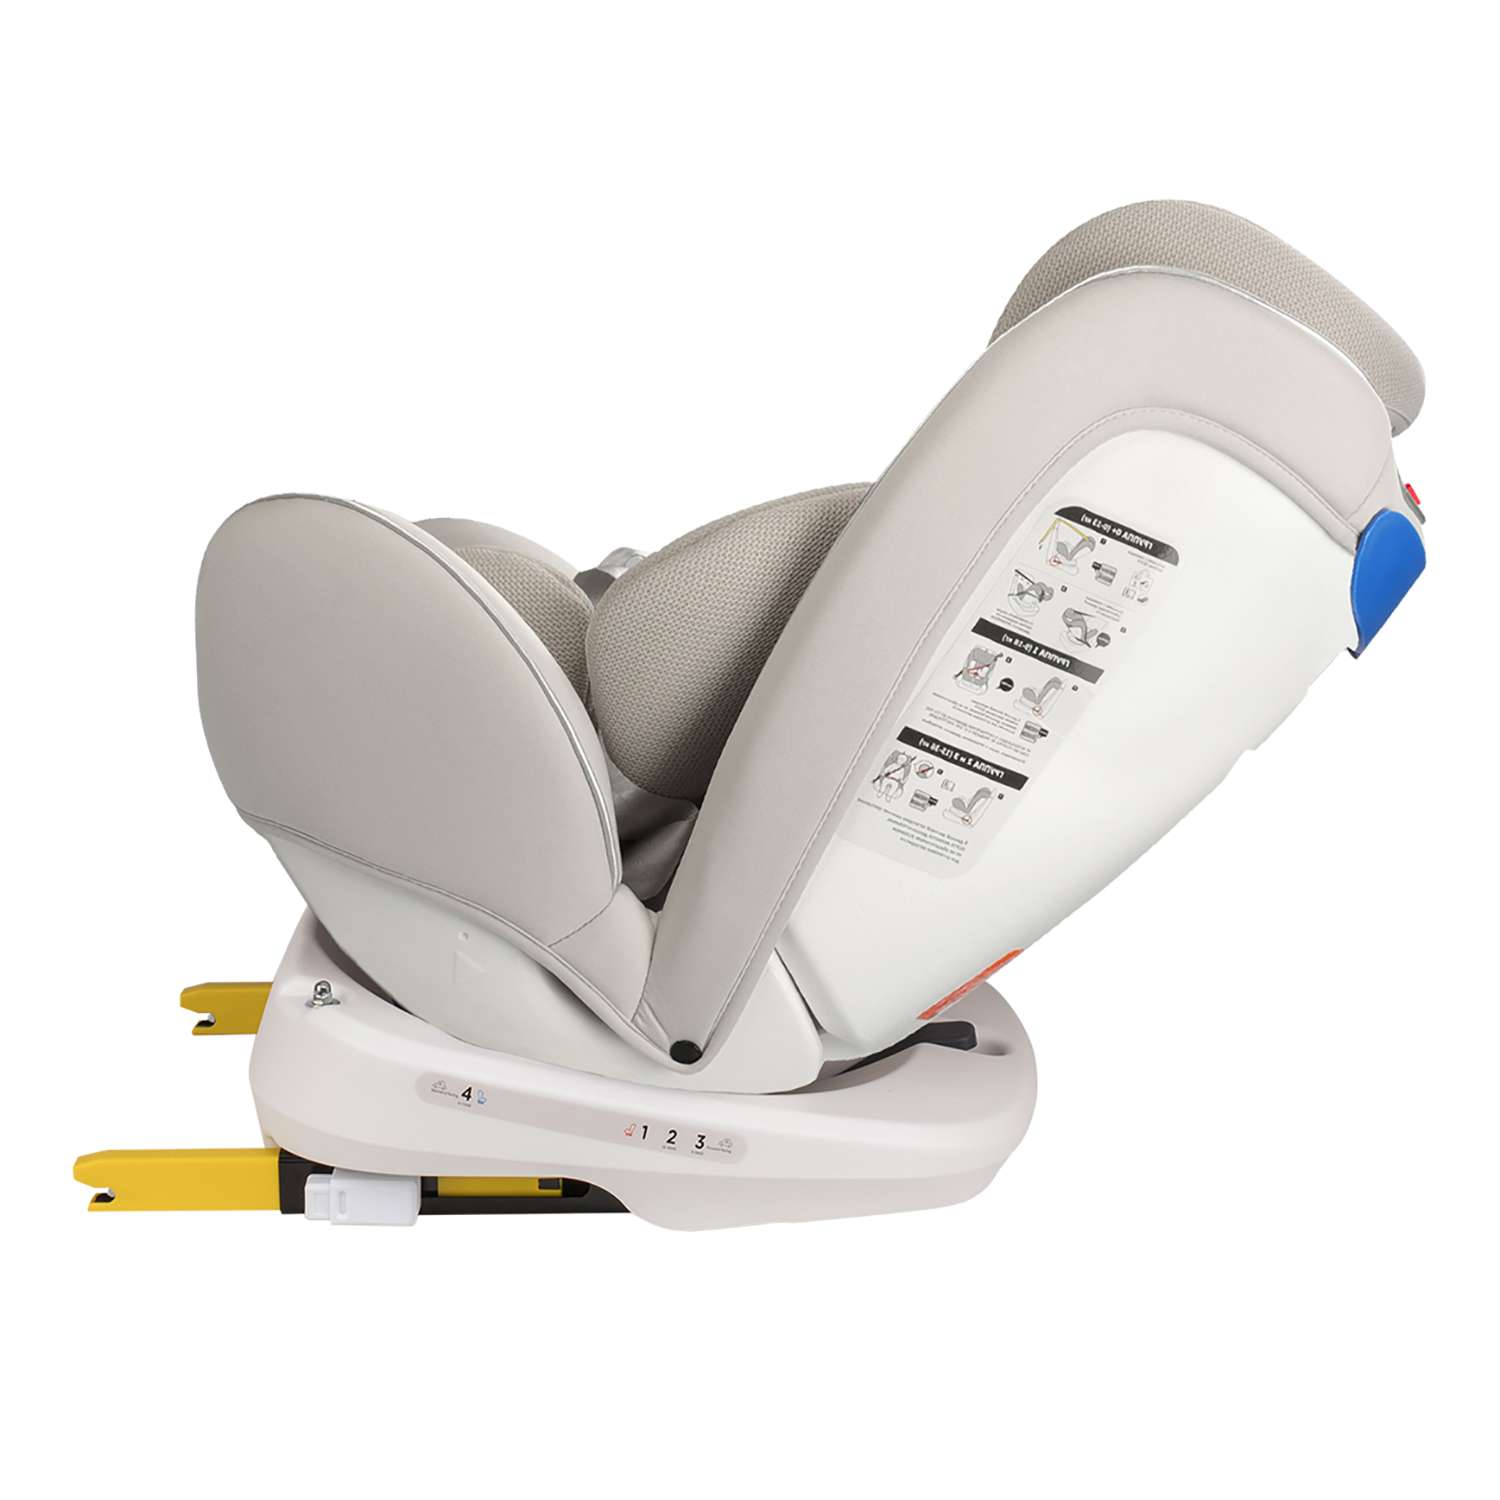 Кресло happy baby unix инструкция